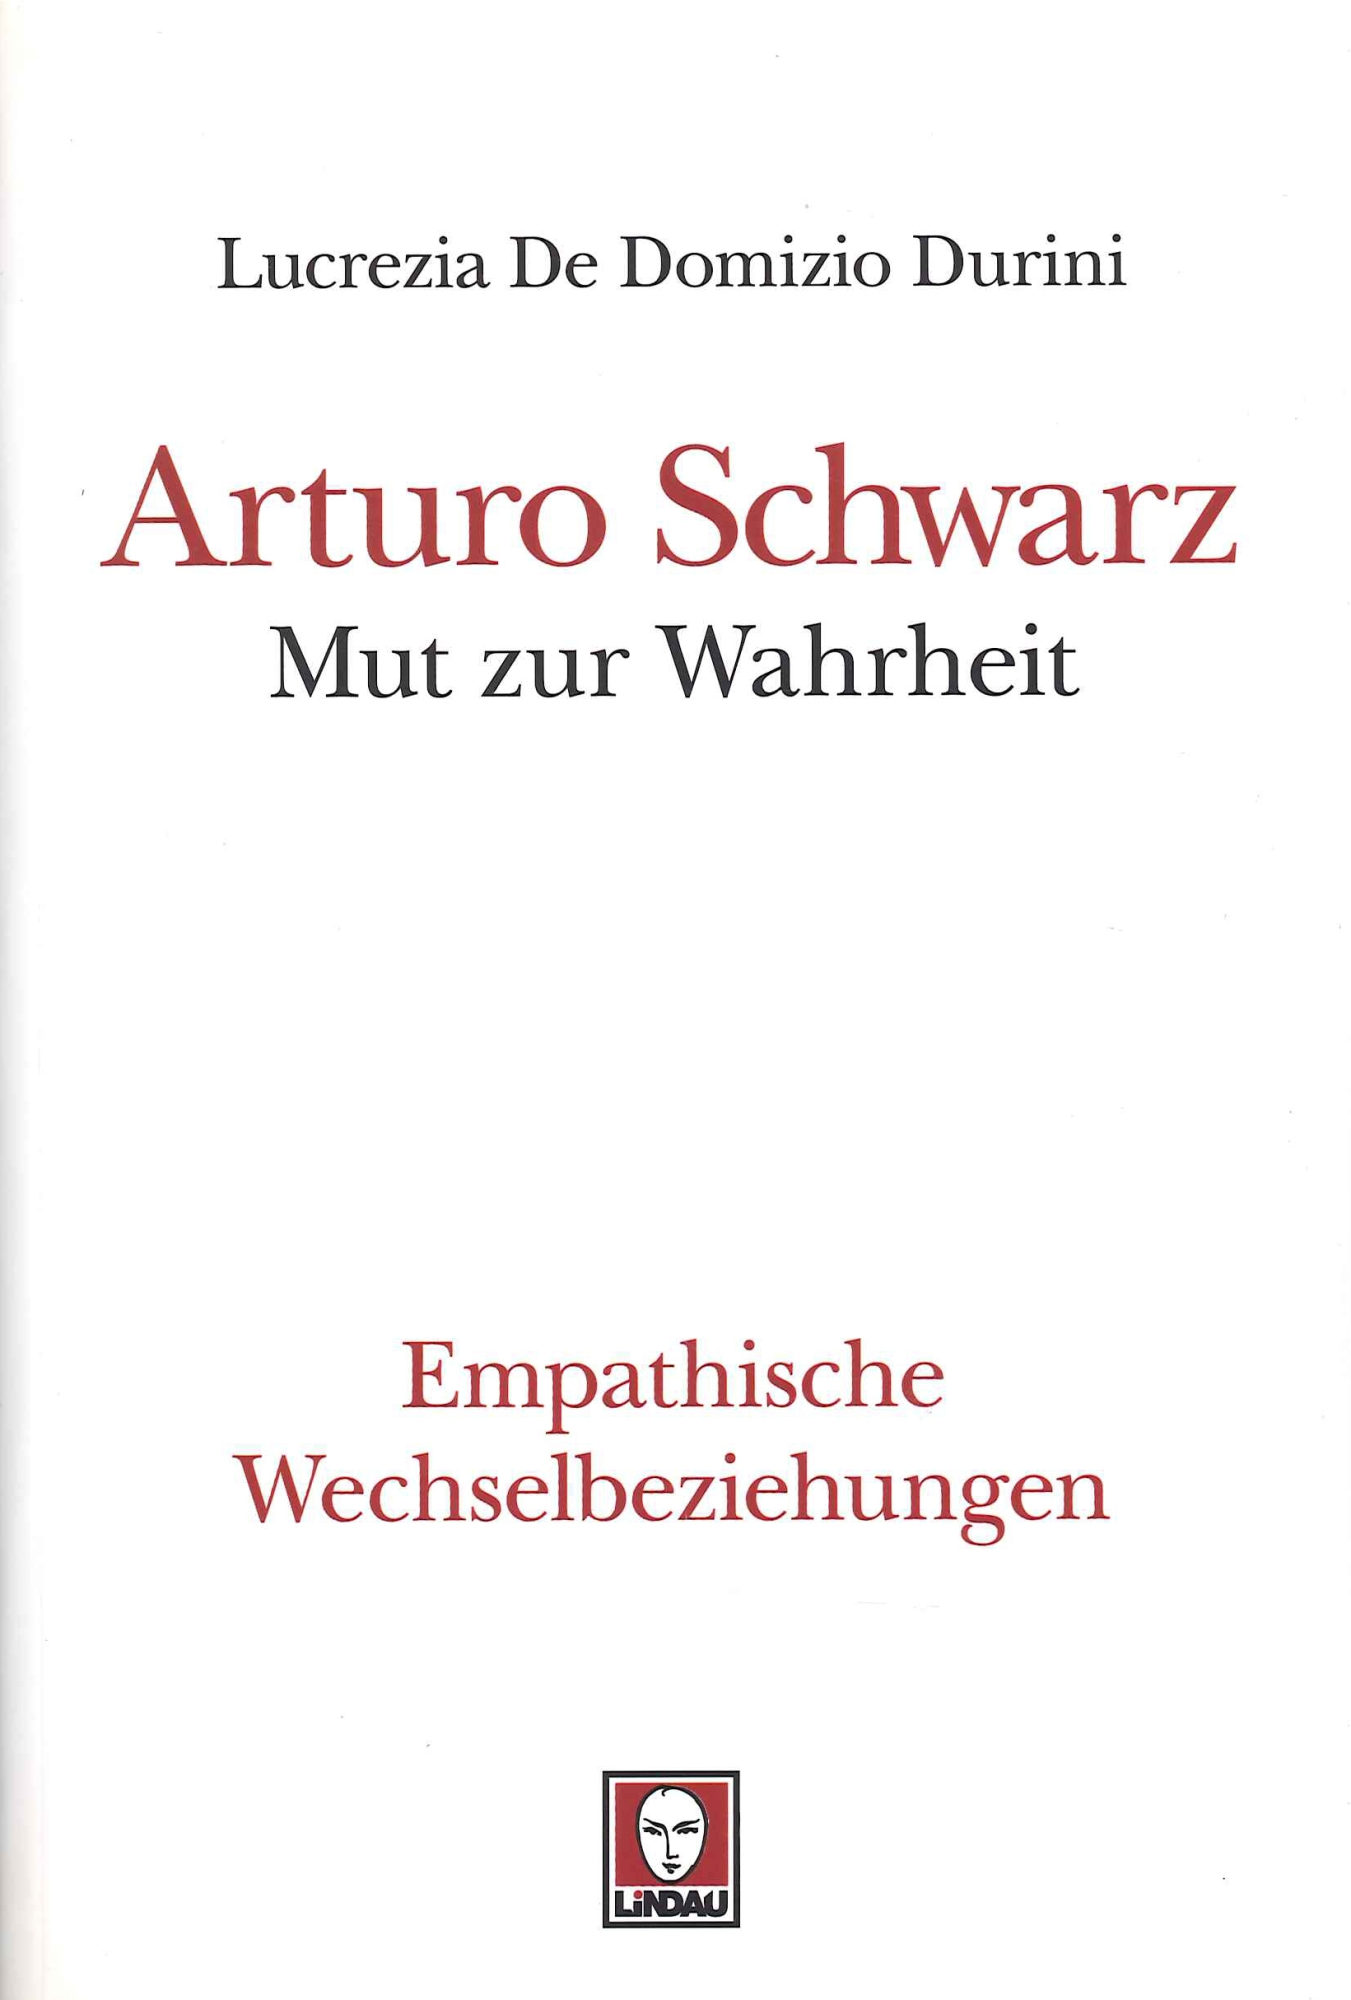 Libri Lucrezia De Domizio Durini - Arturo Schwarz. Mut Zur Wahrheit NUOVO SIGILLATO, EDIZIONE DEL 01/01/2015 SUBITO DISPONIBILE